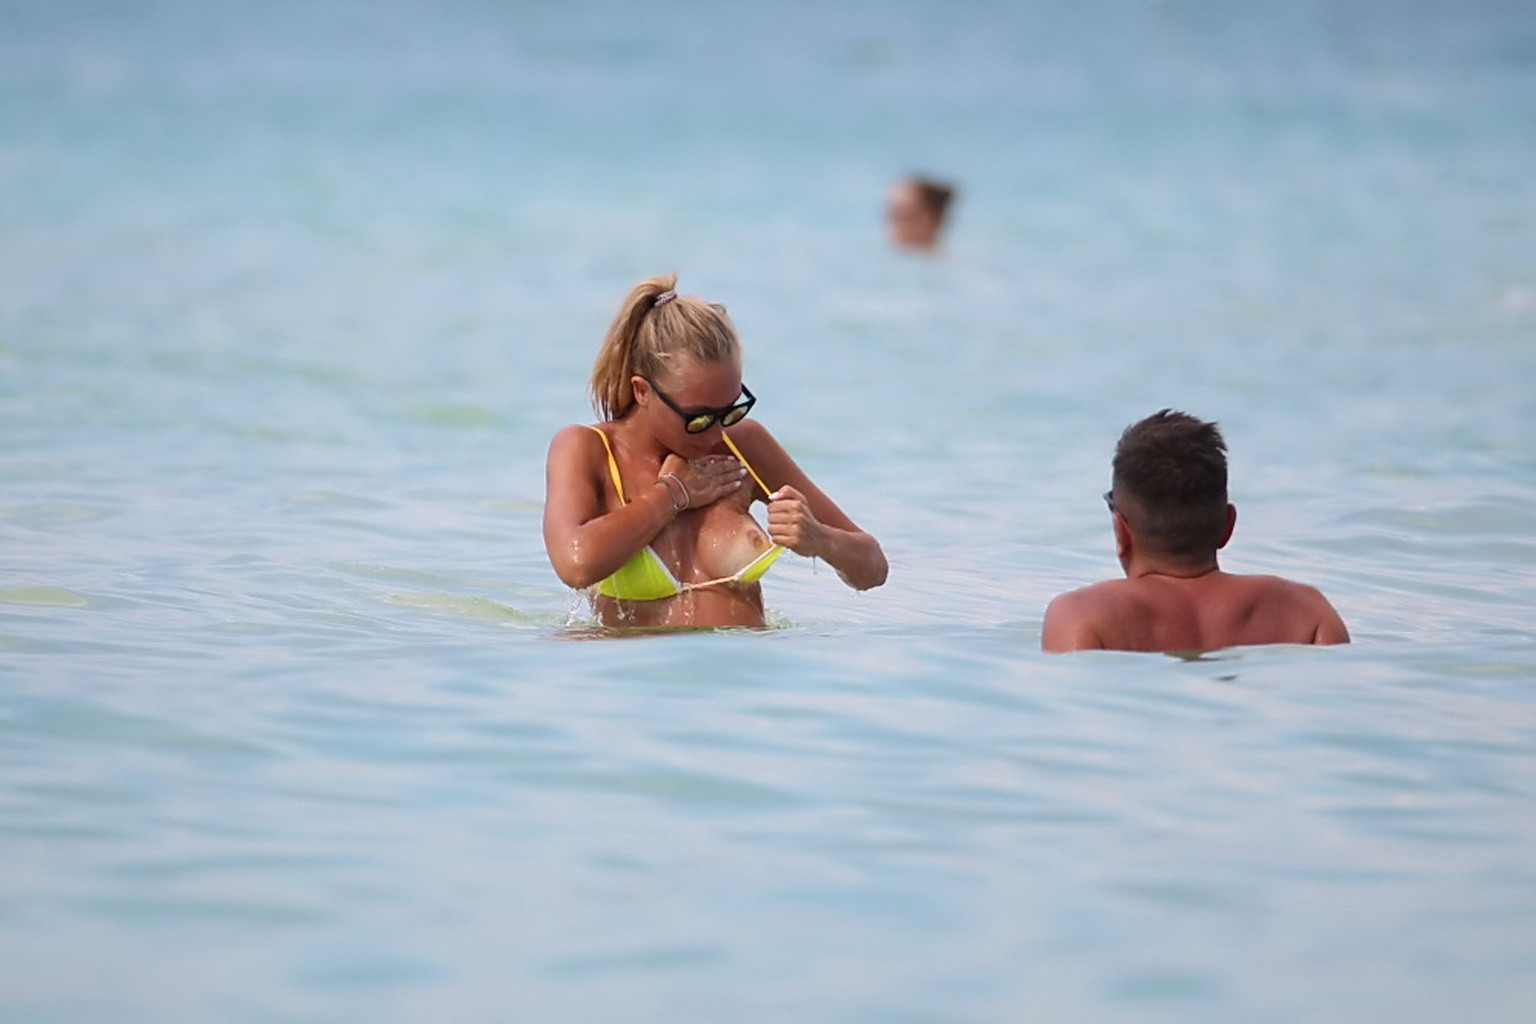 Laura cremaschi en topless y siendo manoseada en un bikini tanga amarillo en una playa i
 #75186943